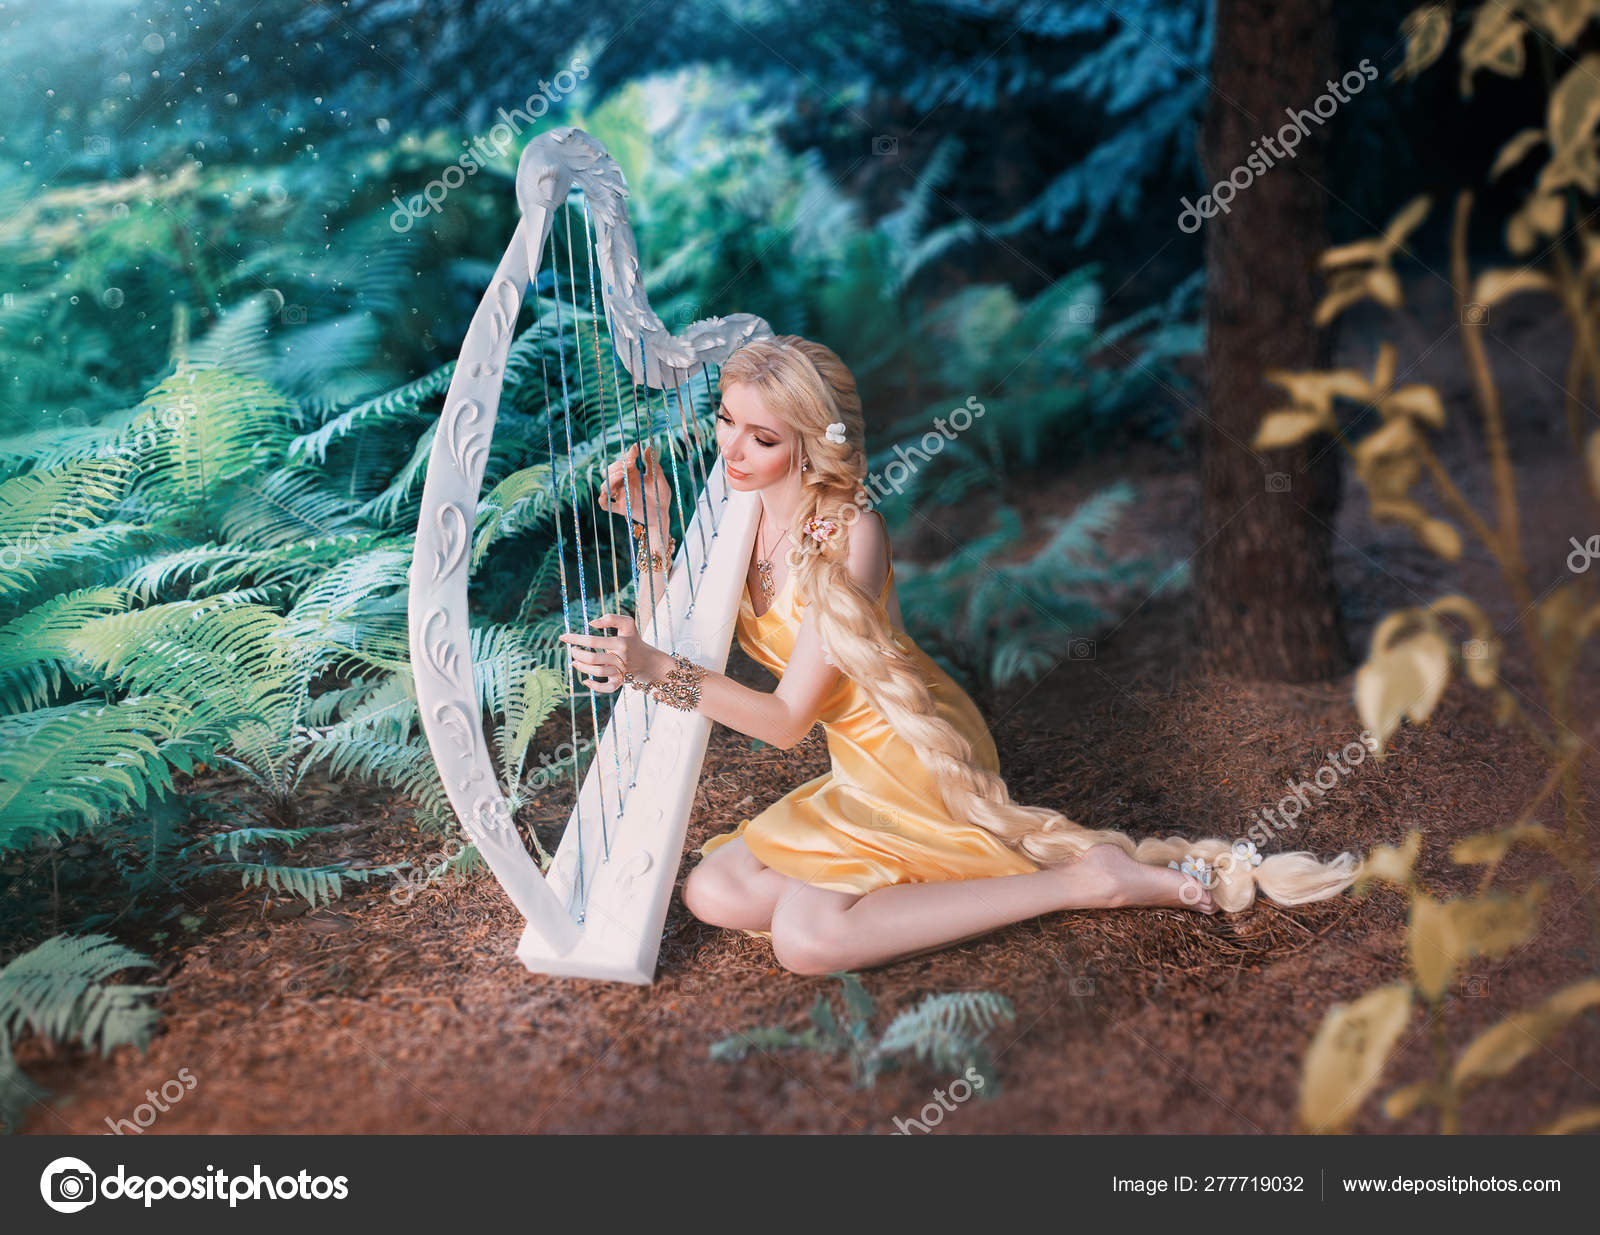 Сказочный лесной эльф сидит под деревом и играет на белой арфе, девушка с длинными светлыми волосами плетена в длинном желтом платье, летняя богиня отдыхает и поет под звуки волшебного музыкального инструмента стоковое